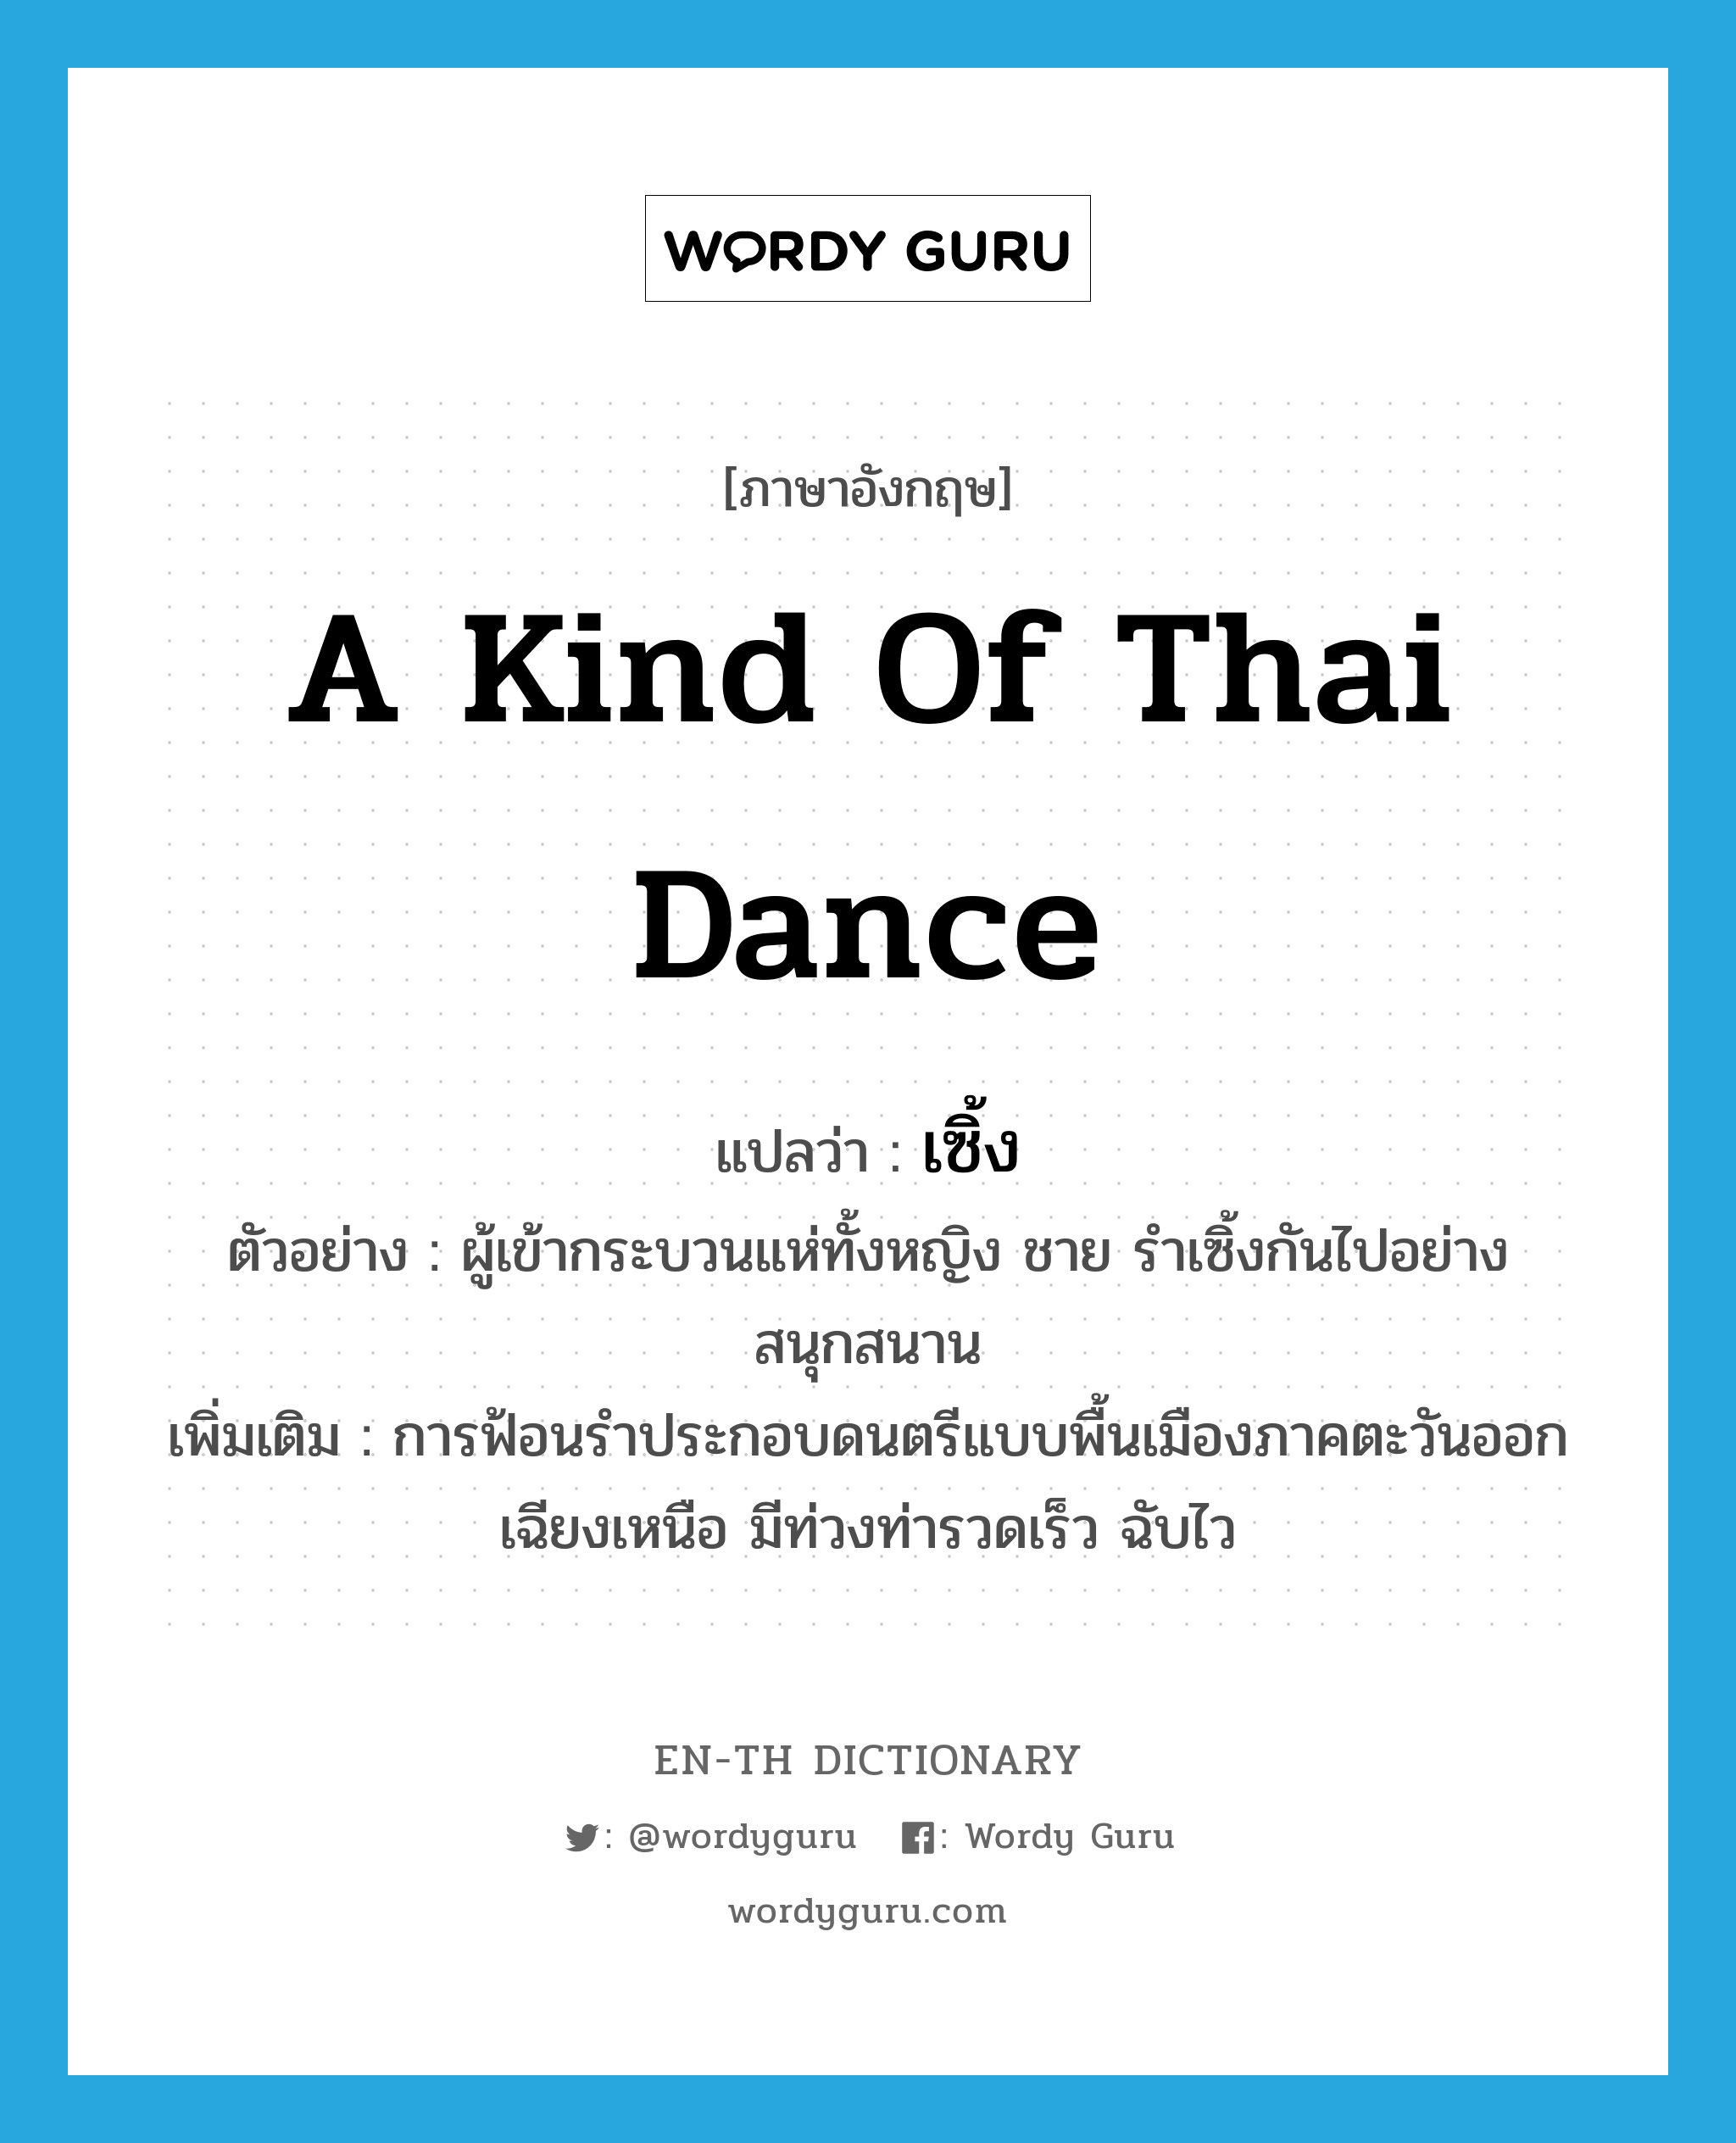 เซิ้ง ภาษาอังกฤษ?, คำศัพท์ภาษาอังกฤษ เซิ้ง แปลว่า a kind of Thai dance ประเภท N ตัวอย่าง ผู้เข้ากระบวนแห่ทั้งหญิง ชาย รำเซิ้งกันไปอย่างสนุกสนาน เพิ่มเติม การฟ้อนรำประกอบดนตรีแบบพื้นเมืองภาคตะวันออกเฉียงเหนือ มีท่วงท่ารวดเร็ว ฉับไว หมวด N